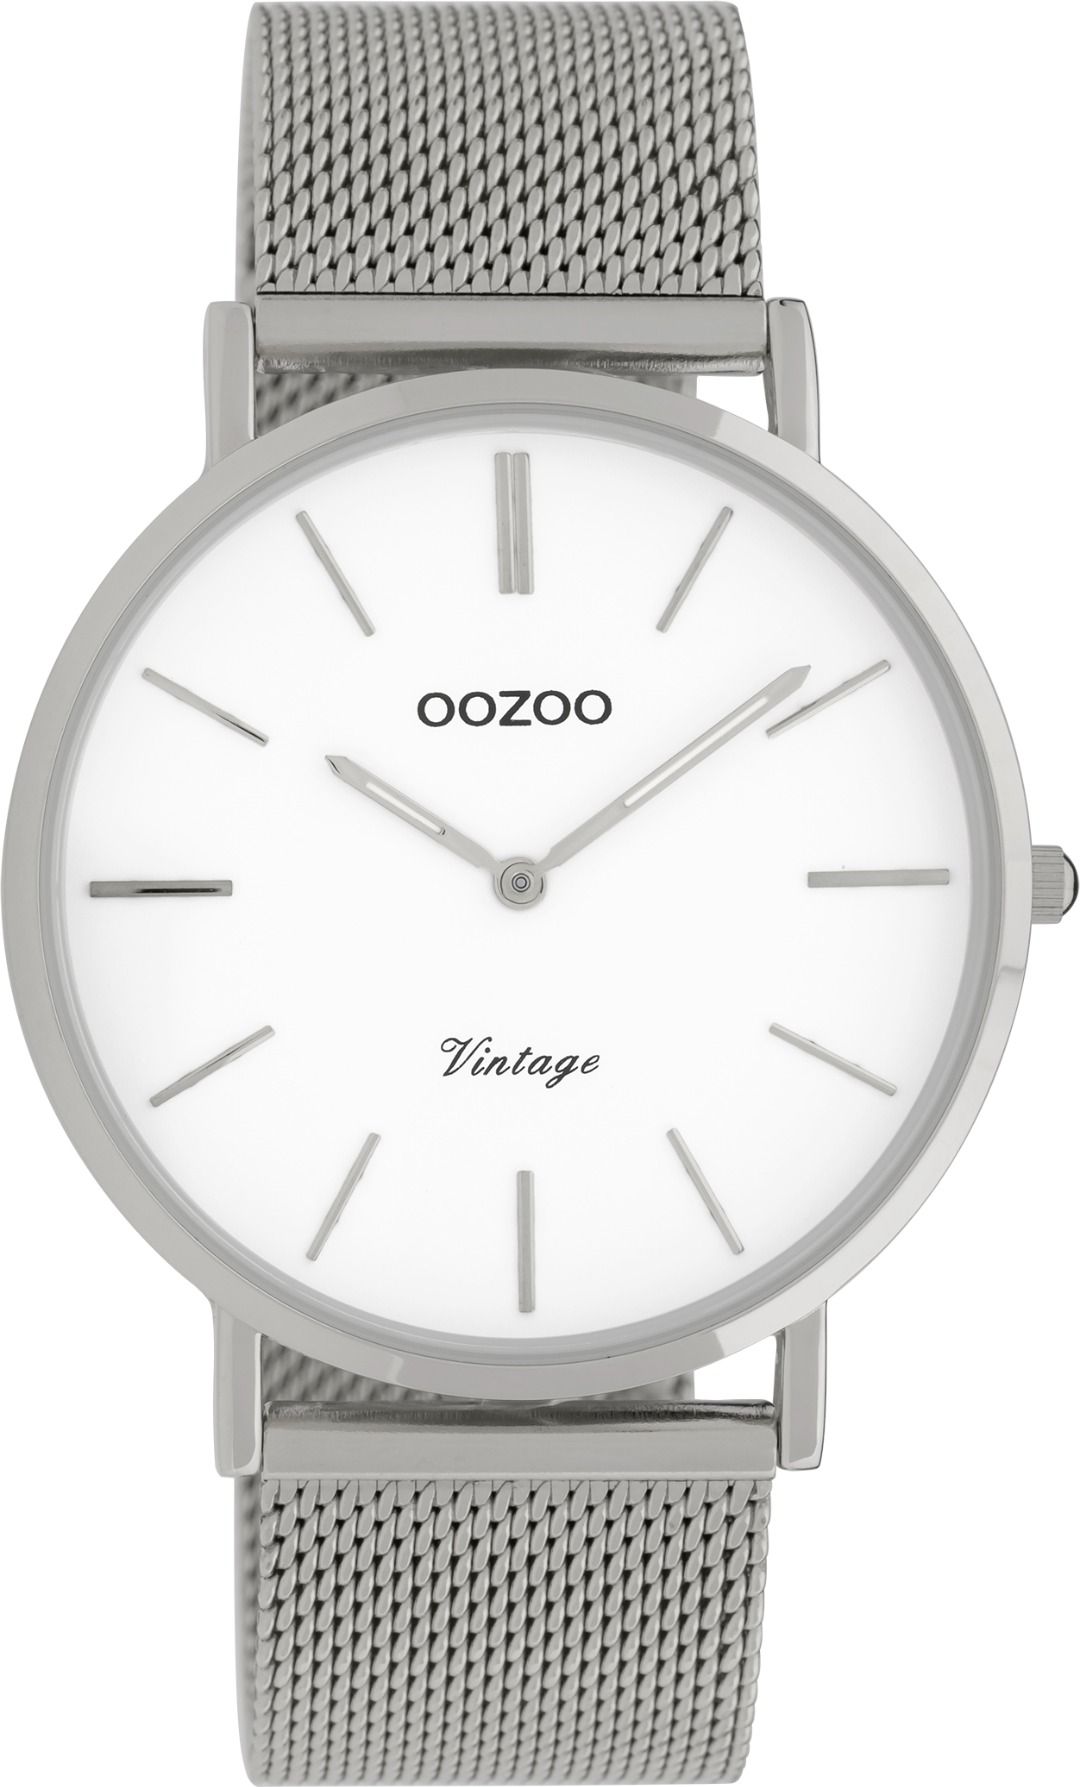 OOZOO Vintage 9901 - 40mm